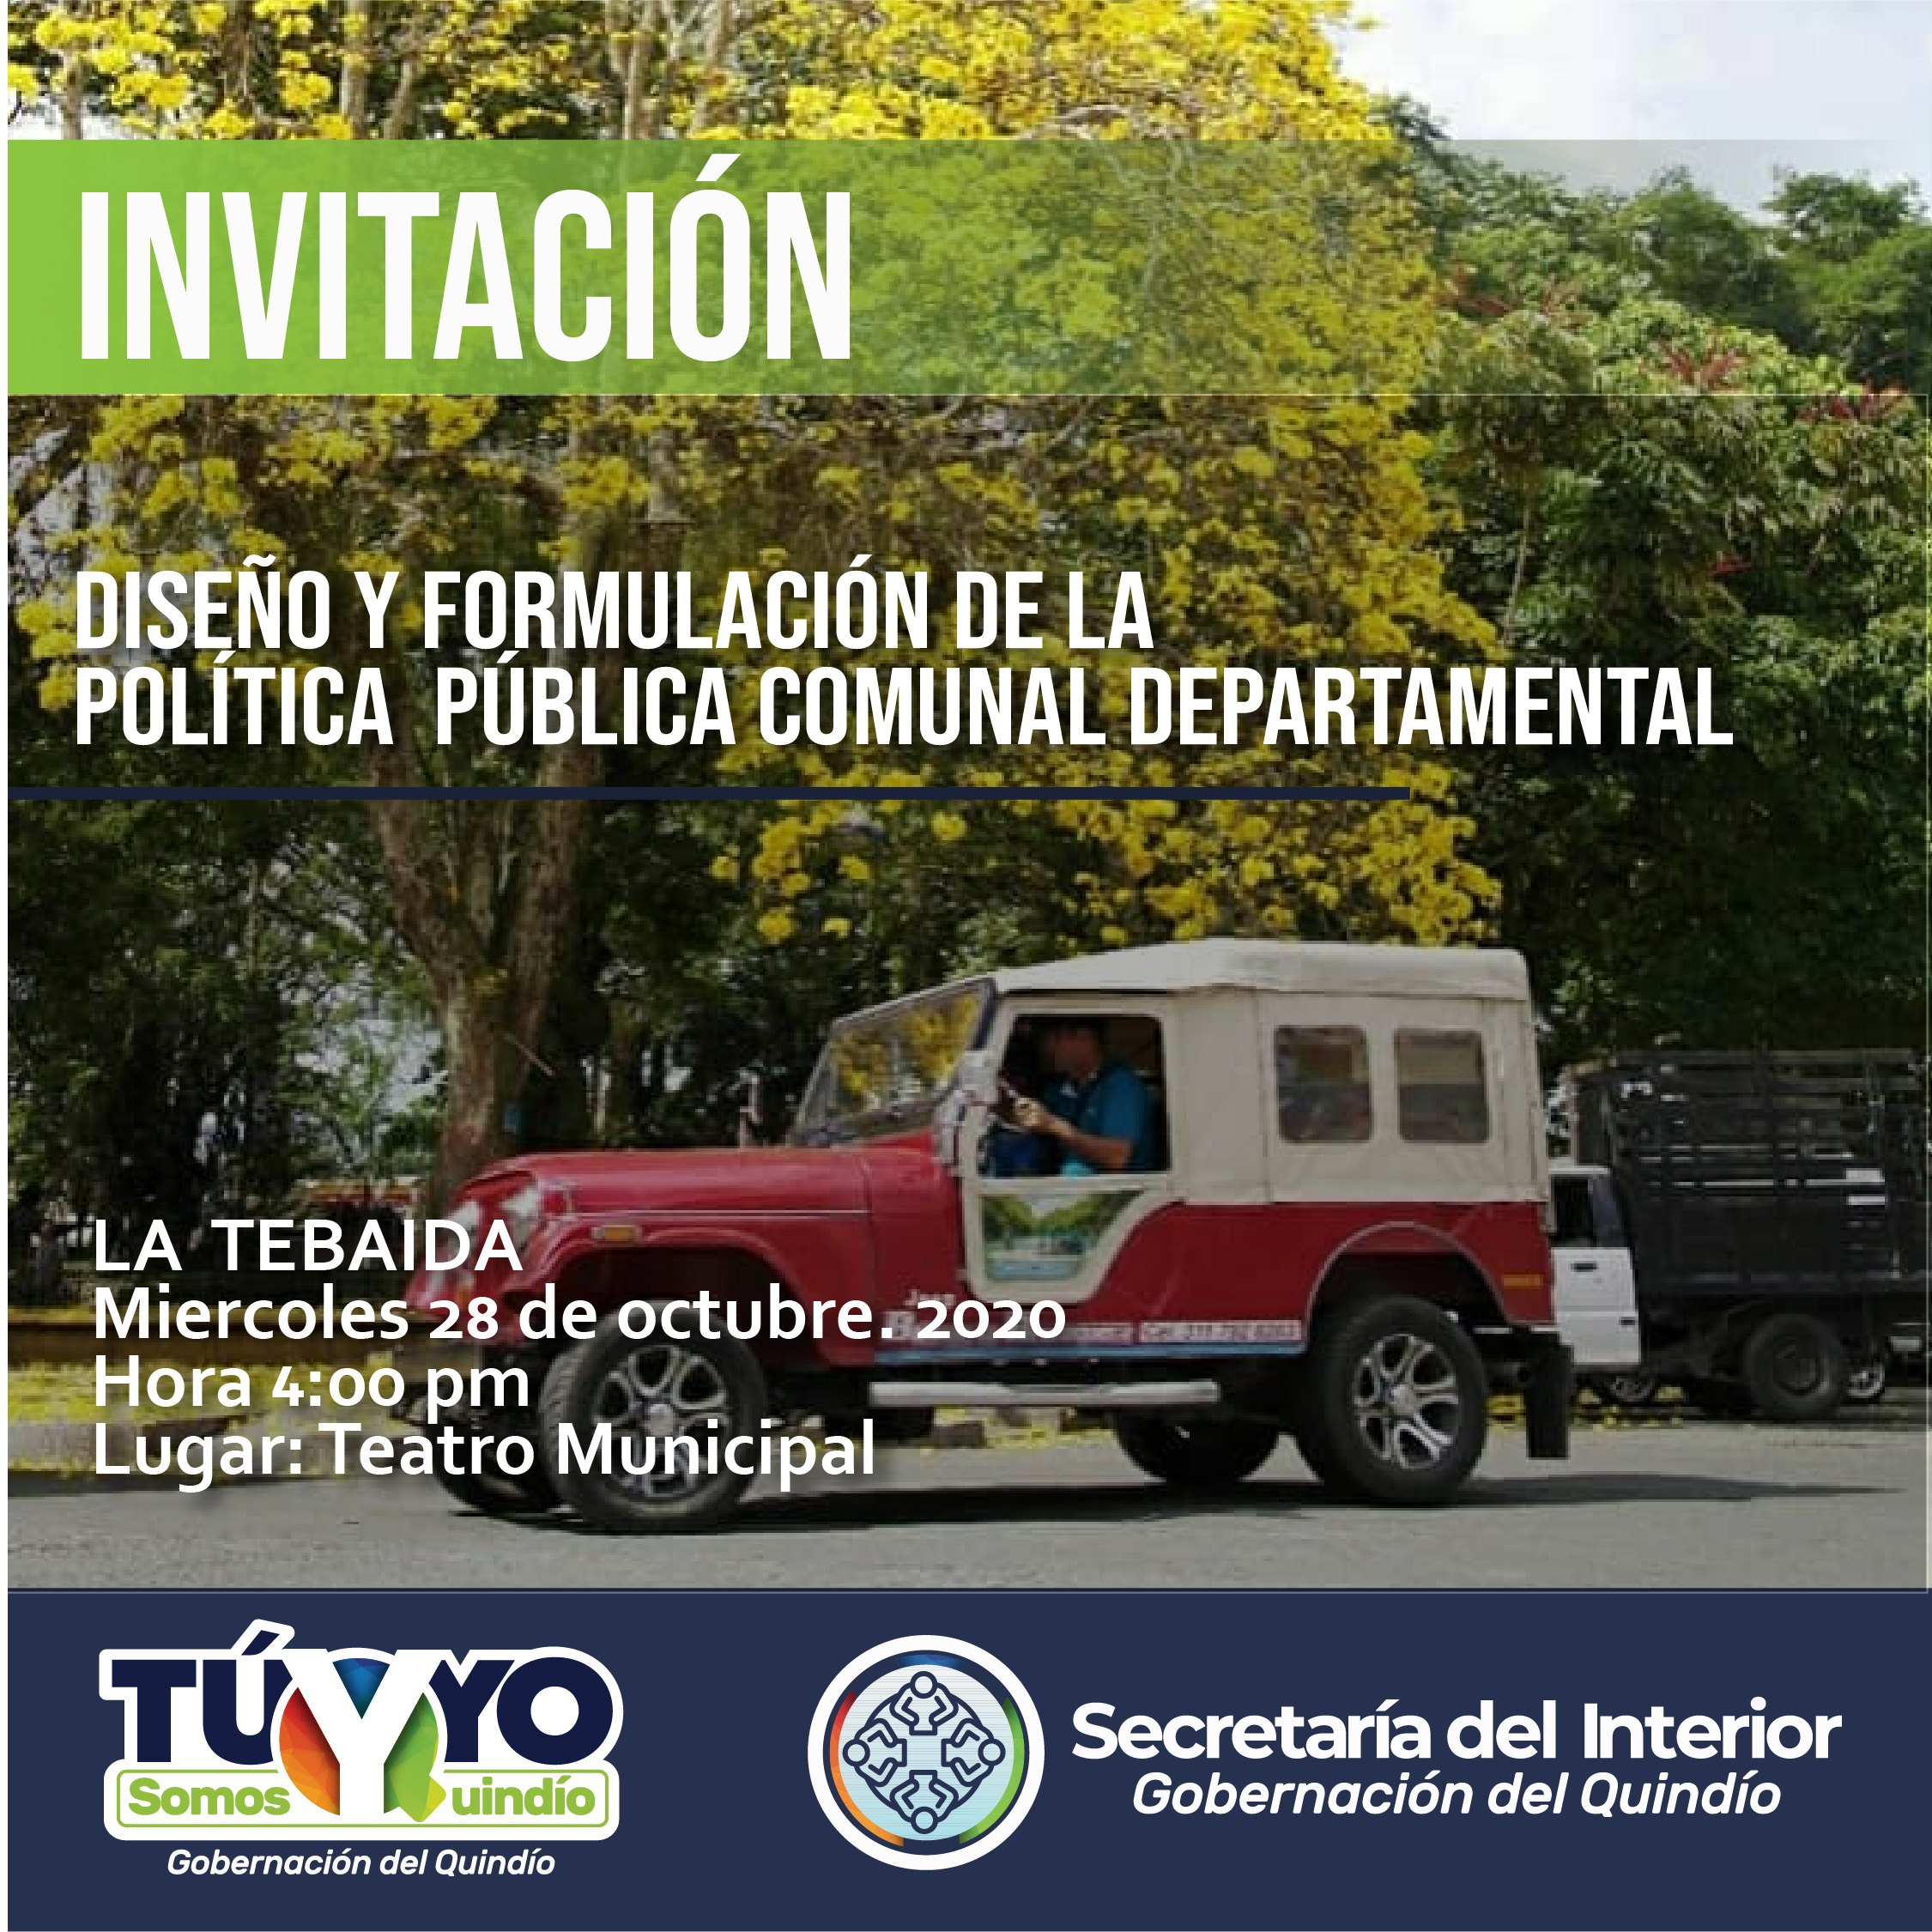 INVITACION La Tebaida POLITICA PUBLICA COMUNAL